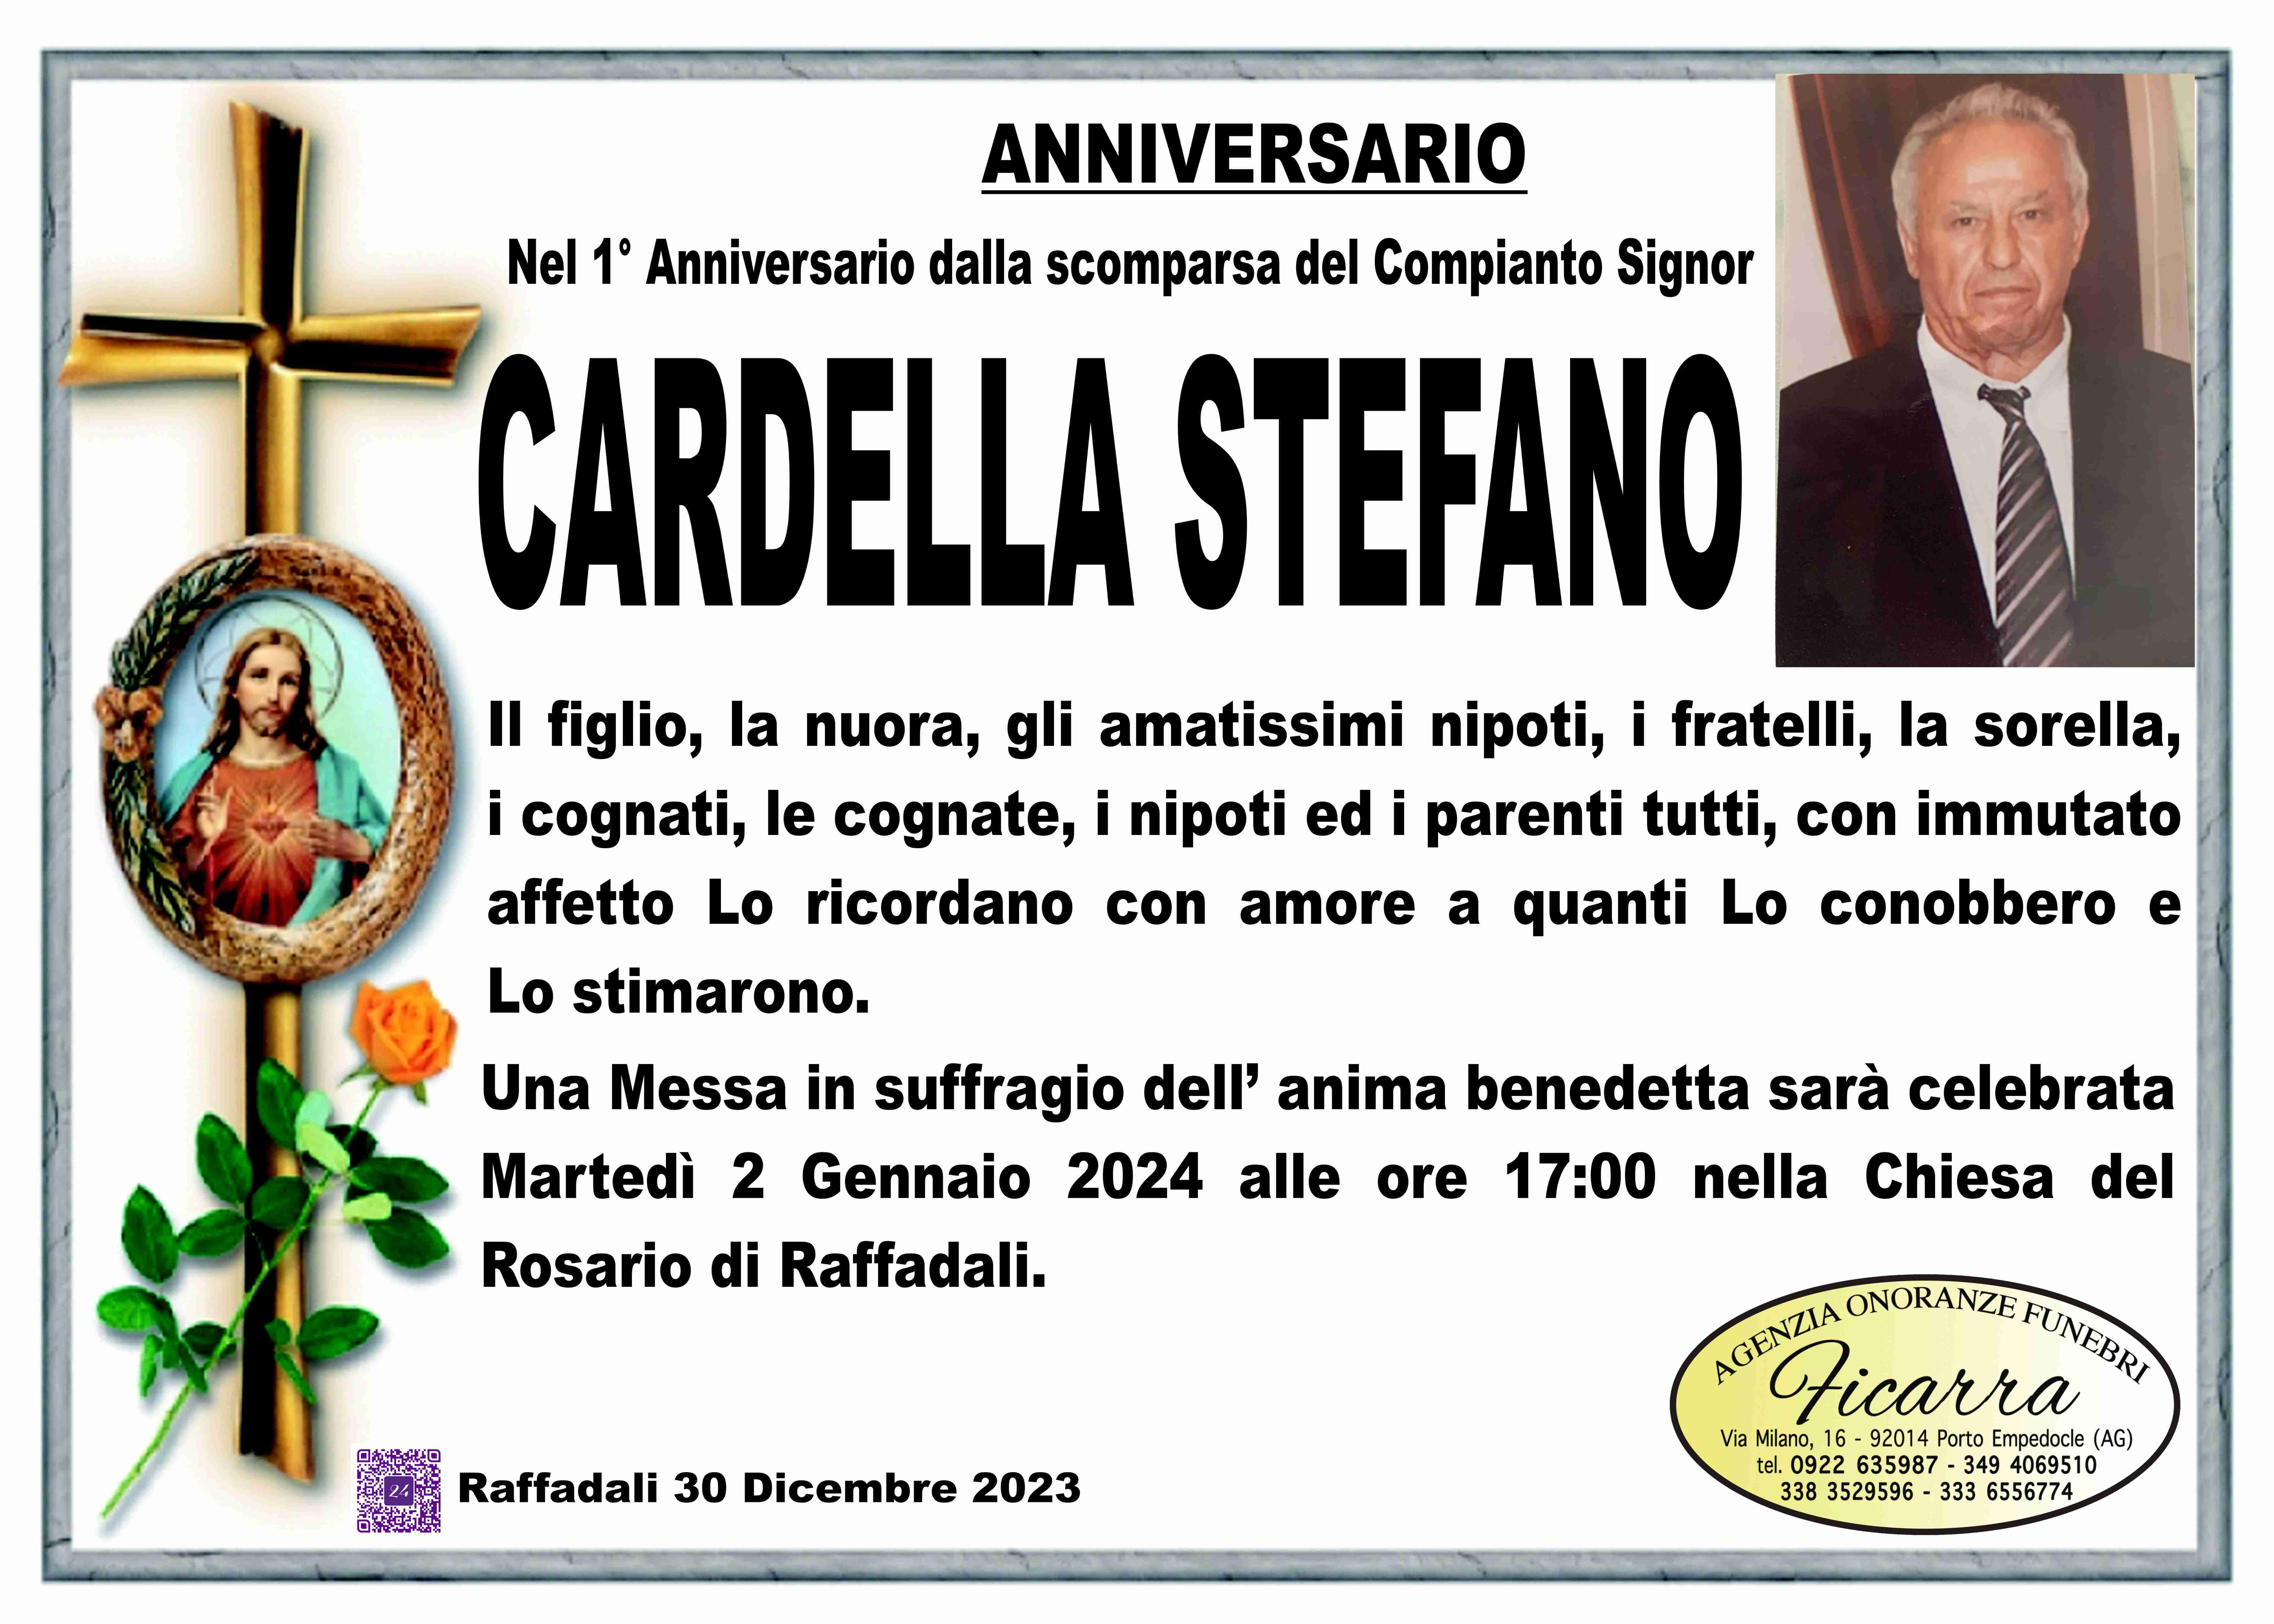 Stefano Cardella